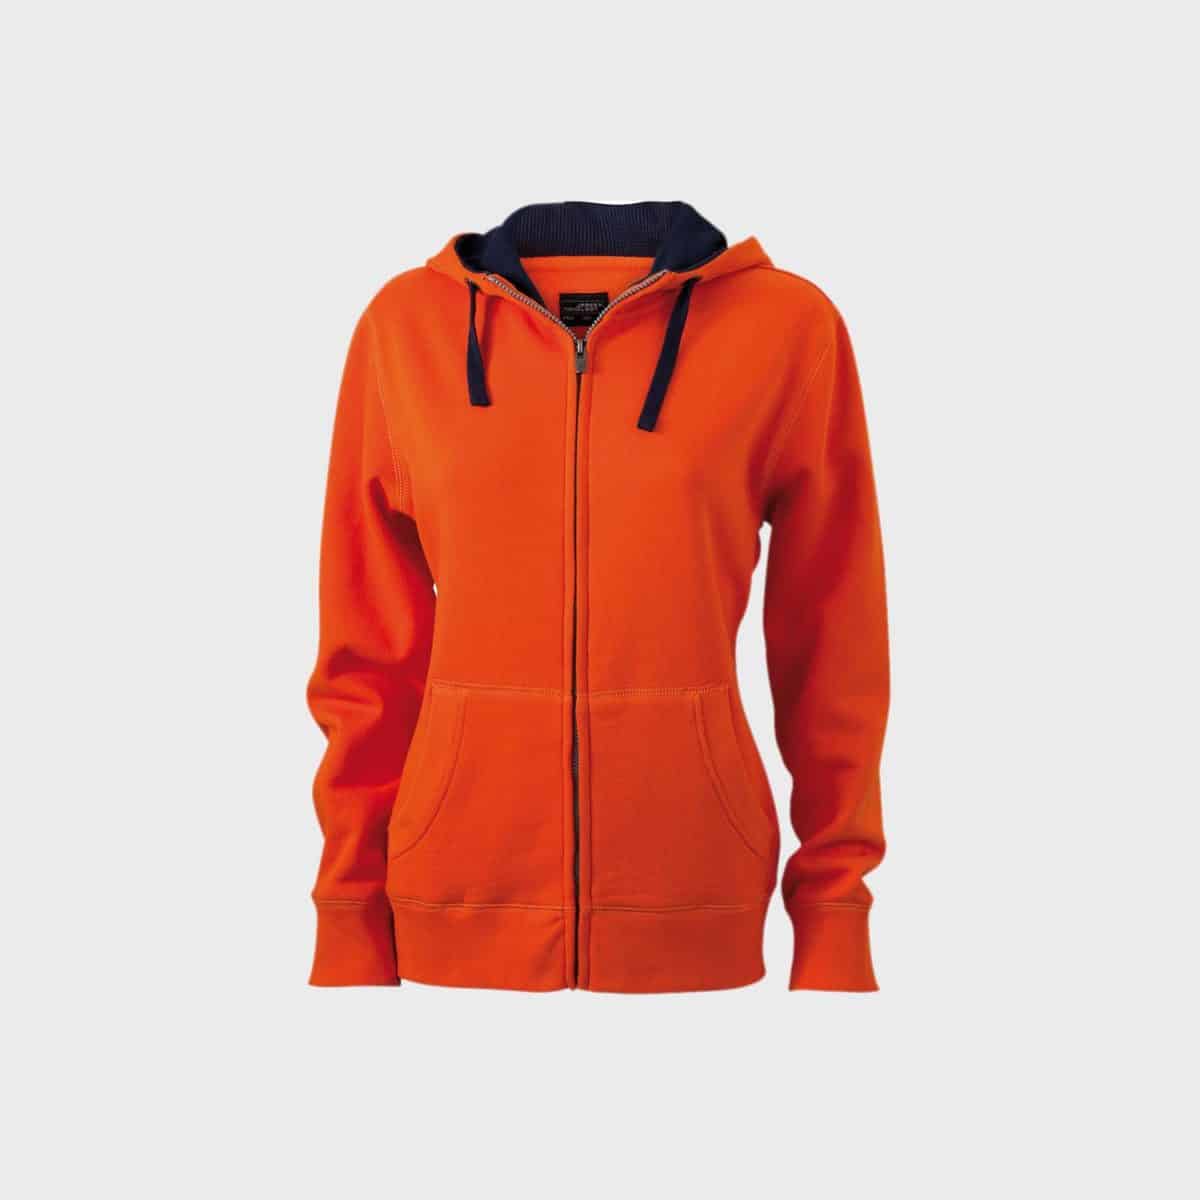 zip-hoodie-sweat-jacket-damen-darkorange-navy-kaufen-besticken_stickmanufaktur